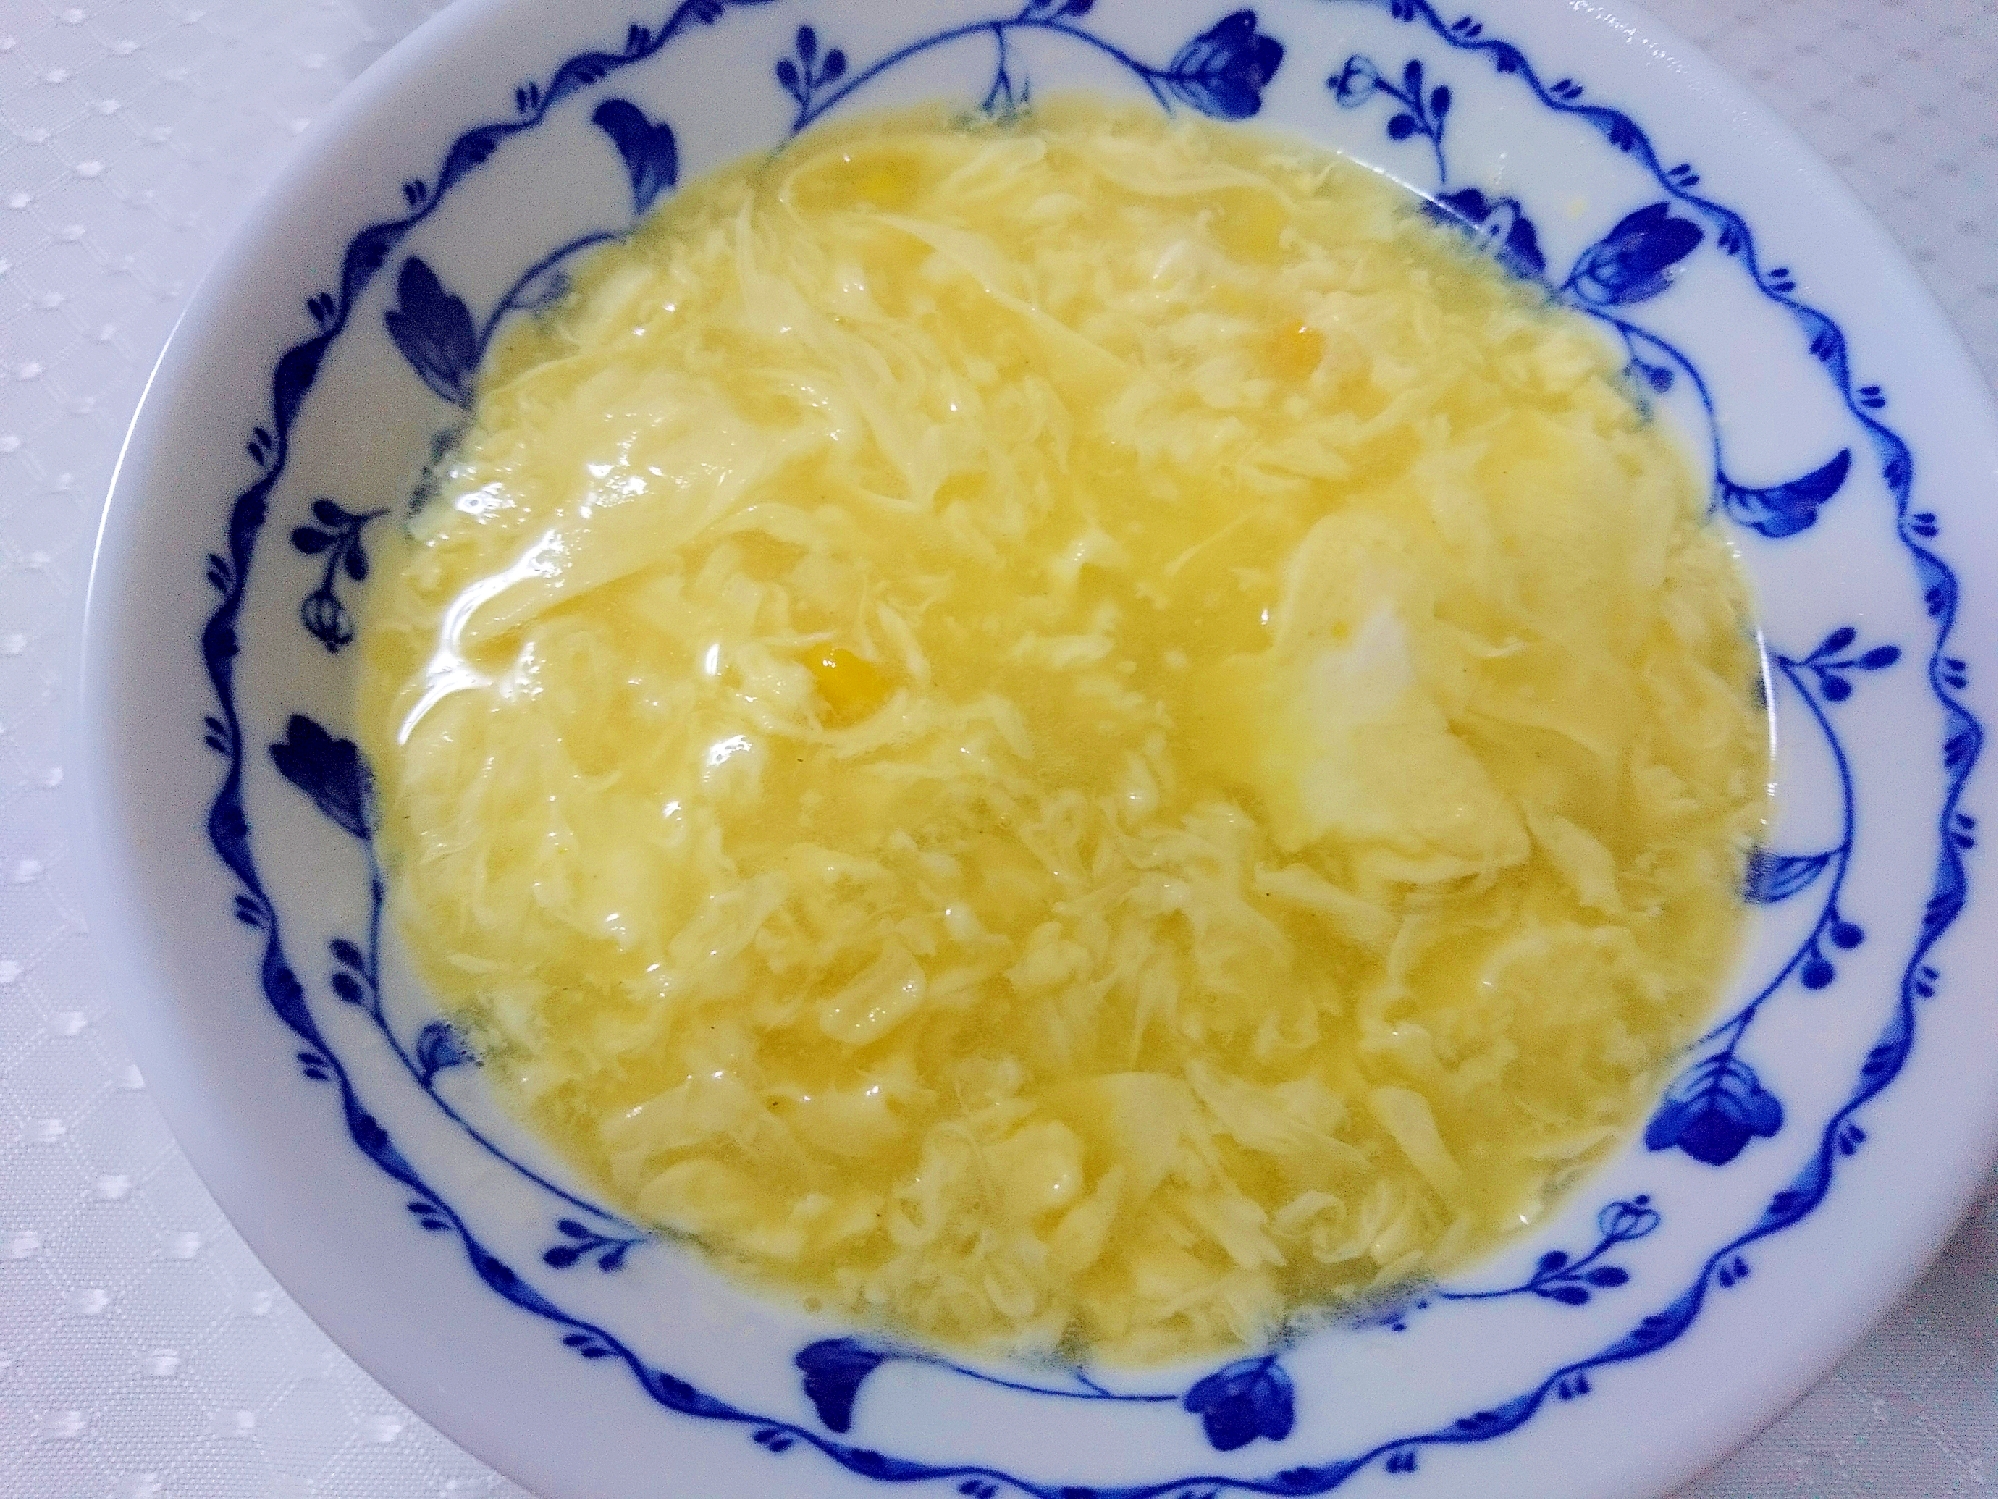 卵とコーンの中華スープ